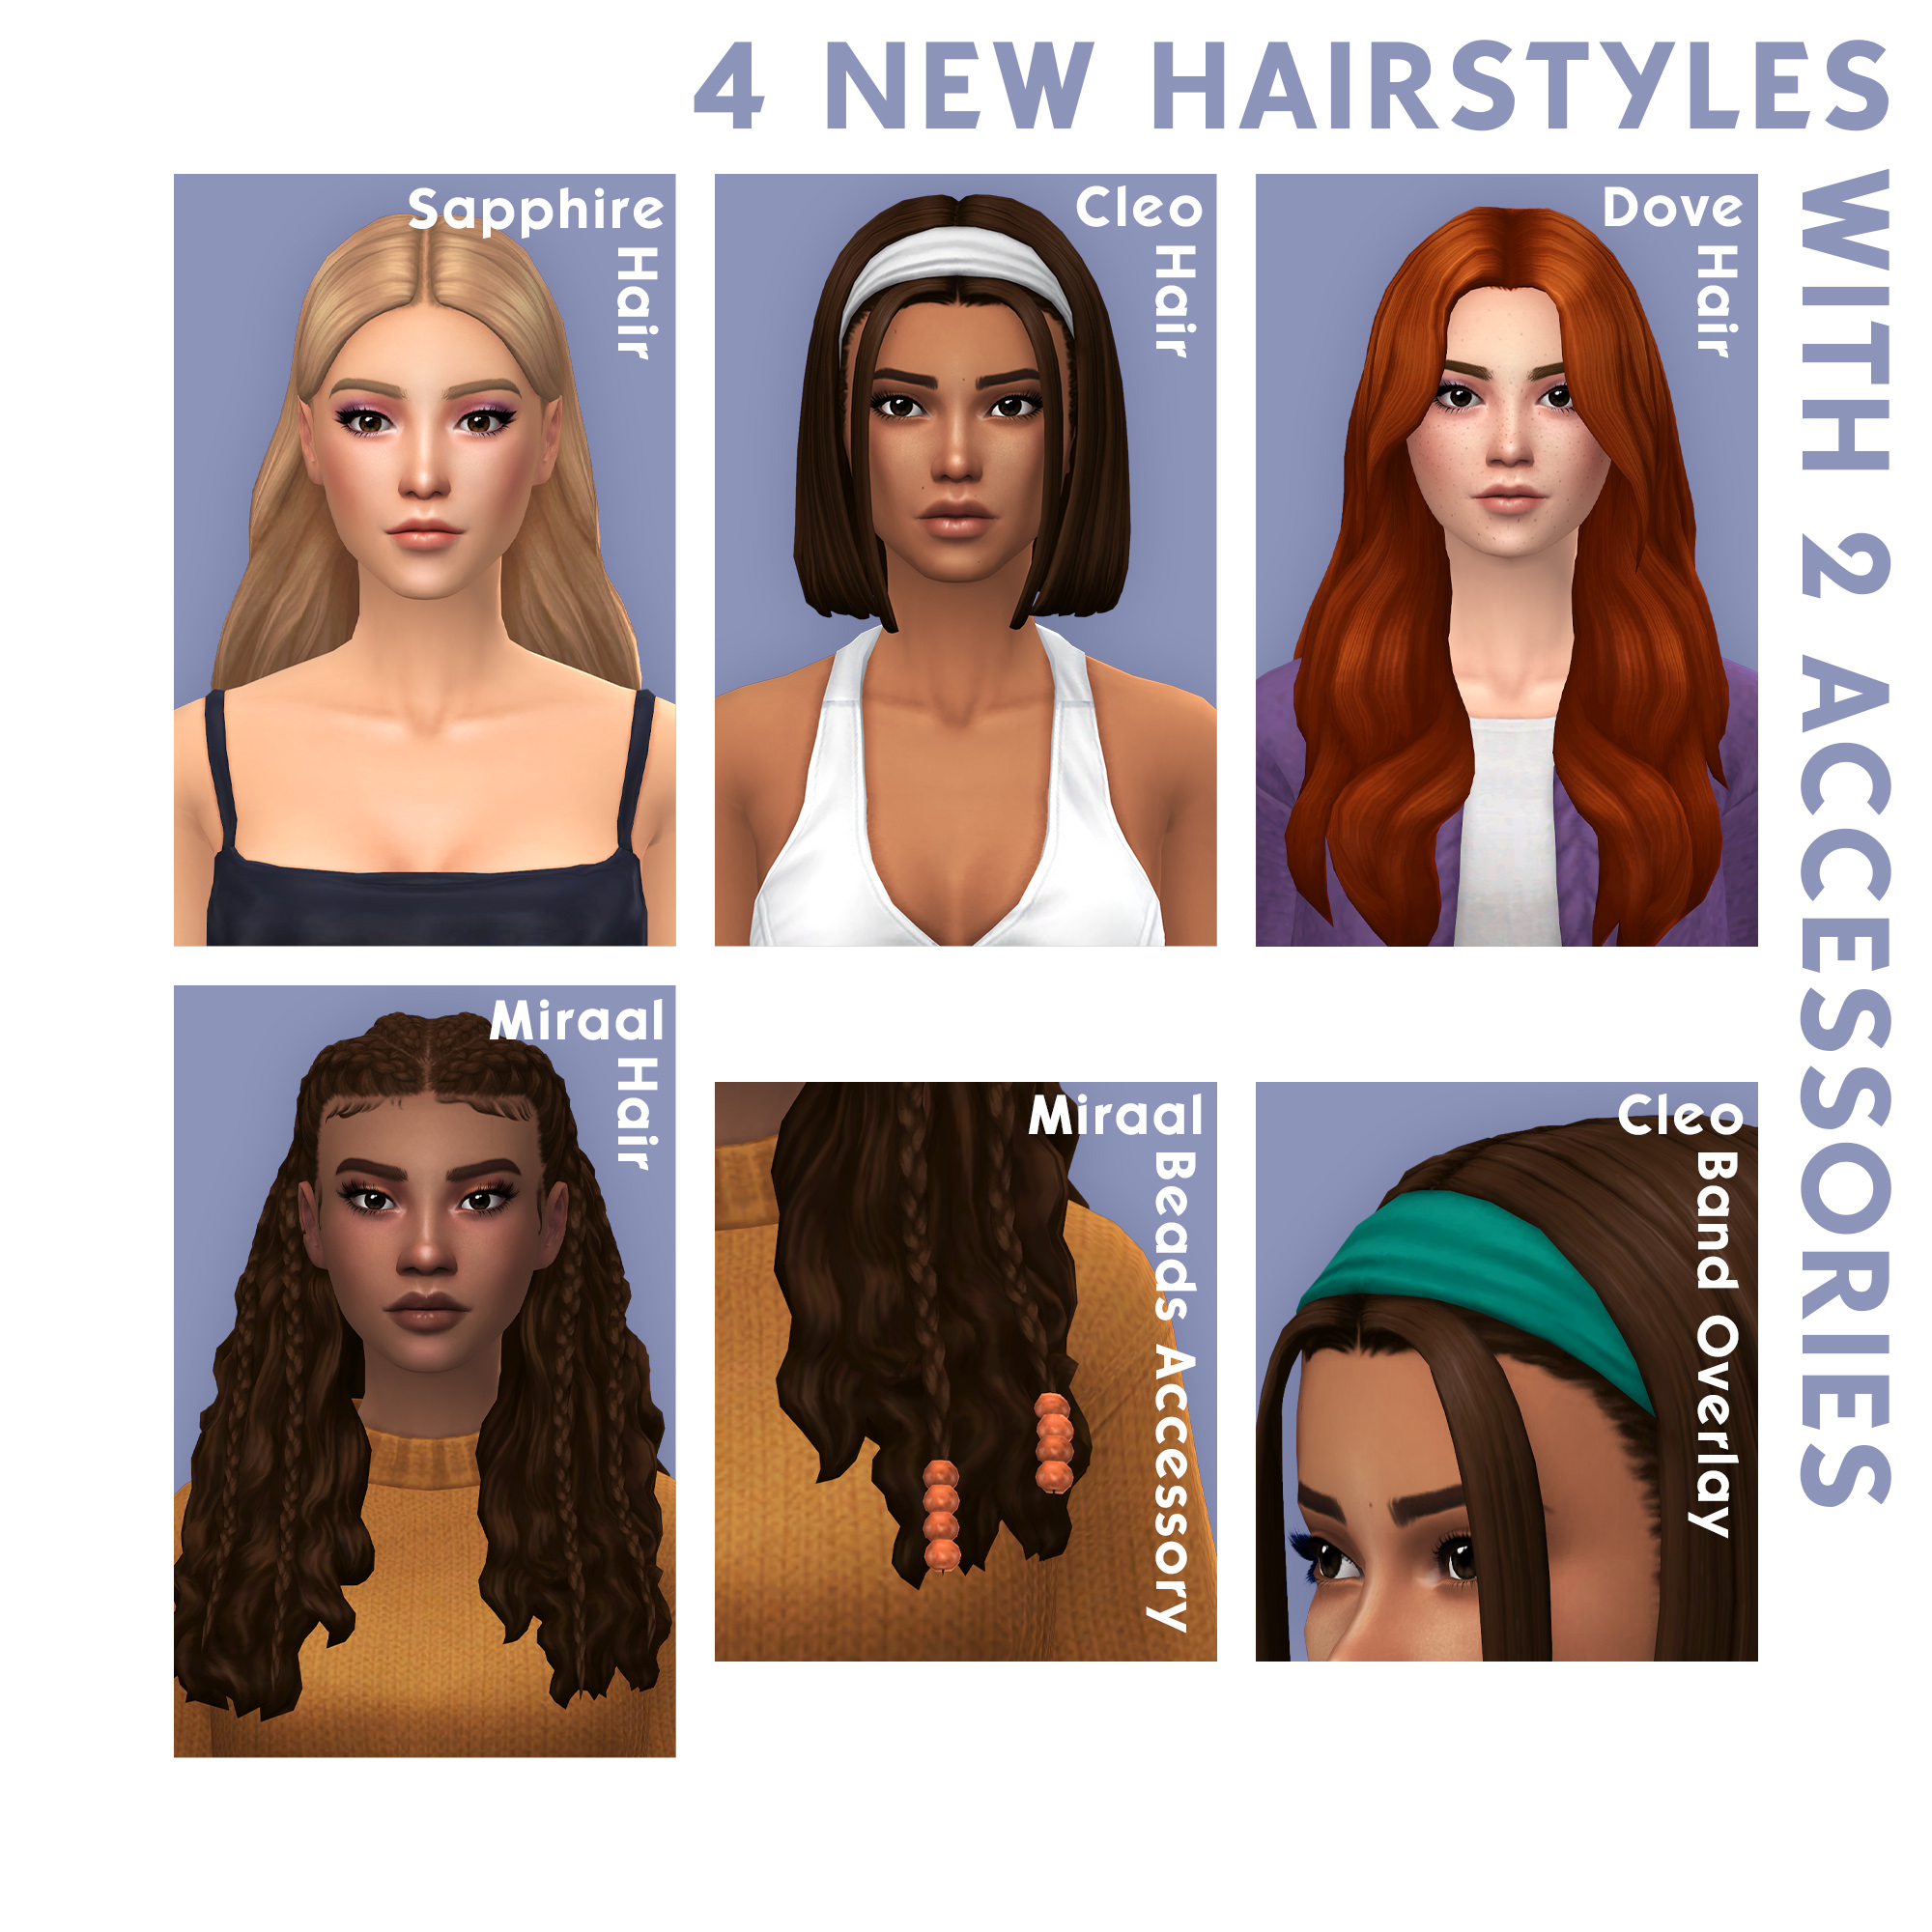 QICC - Genevieve Hair - The Sims 4 Create a Sim - CurseForge